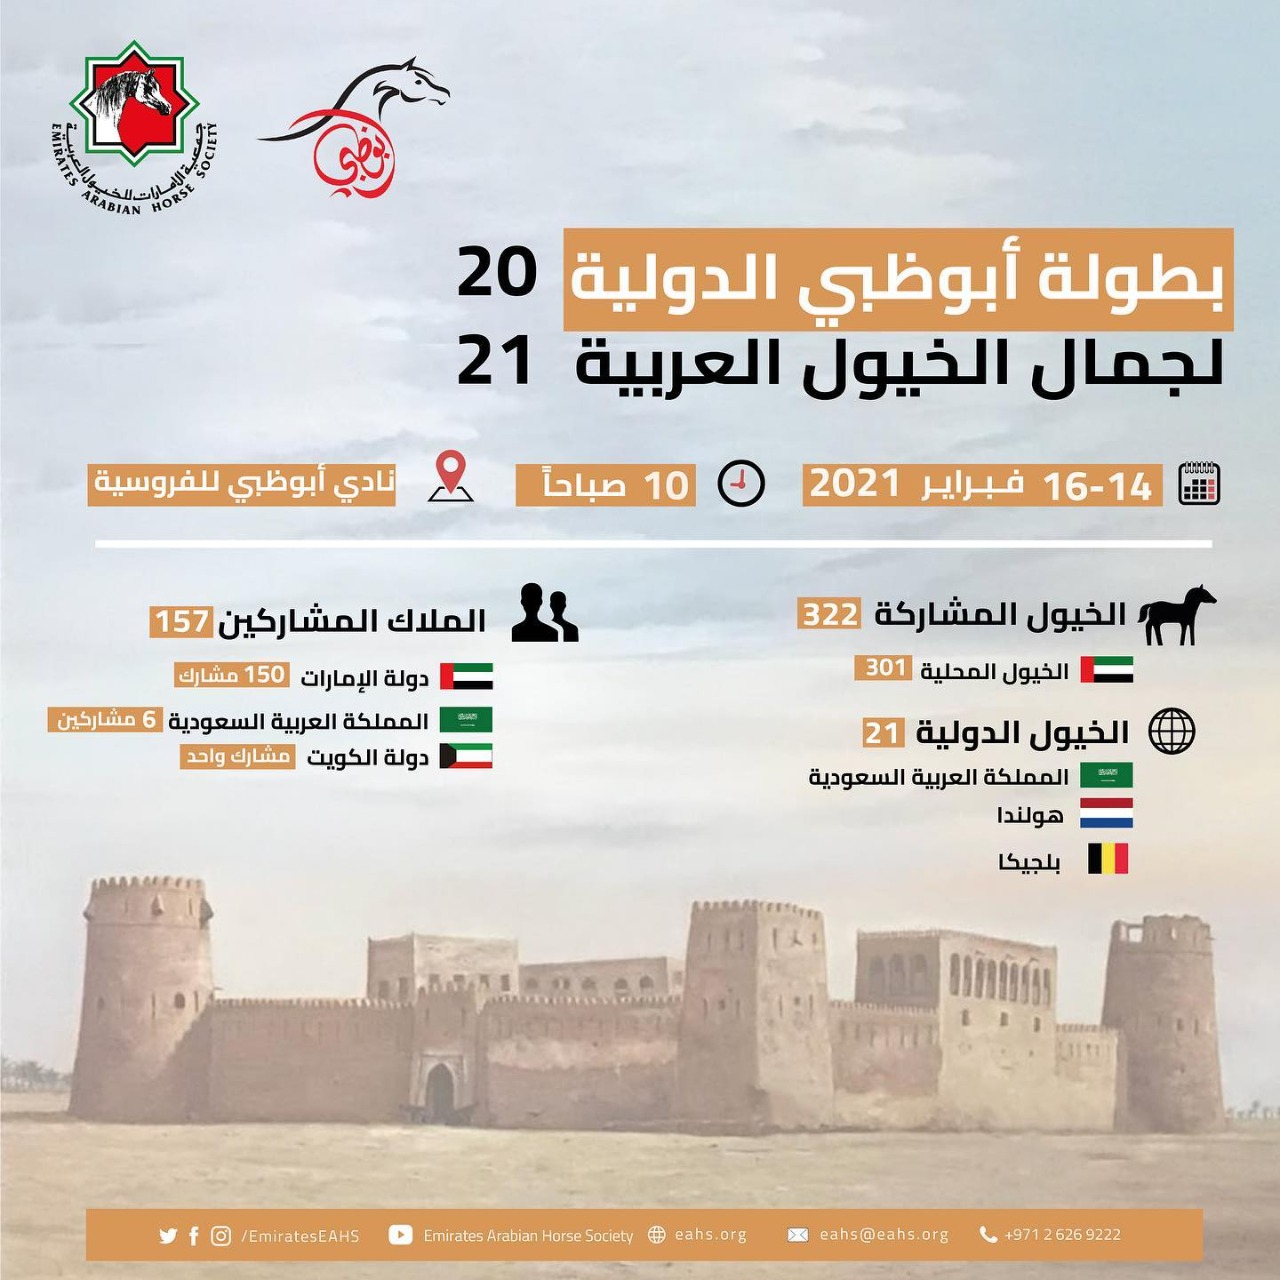 322 حصانا يشاركون ببطولة أبو ظبي لجمال الخيول العربية 2021